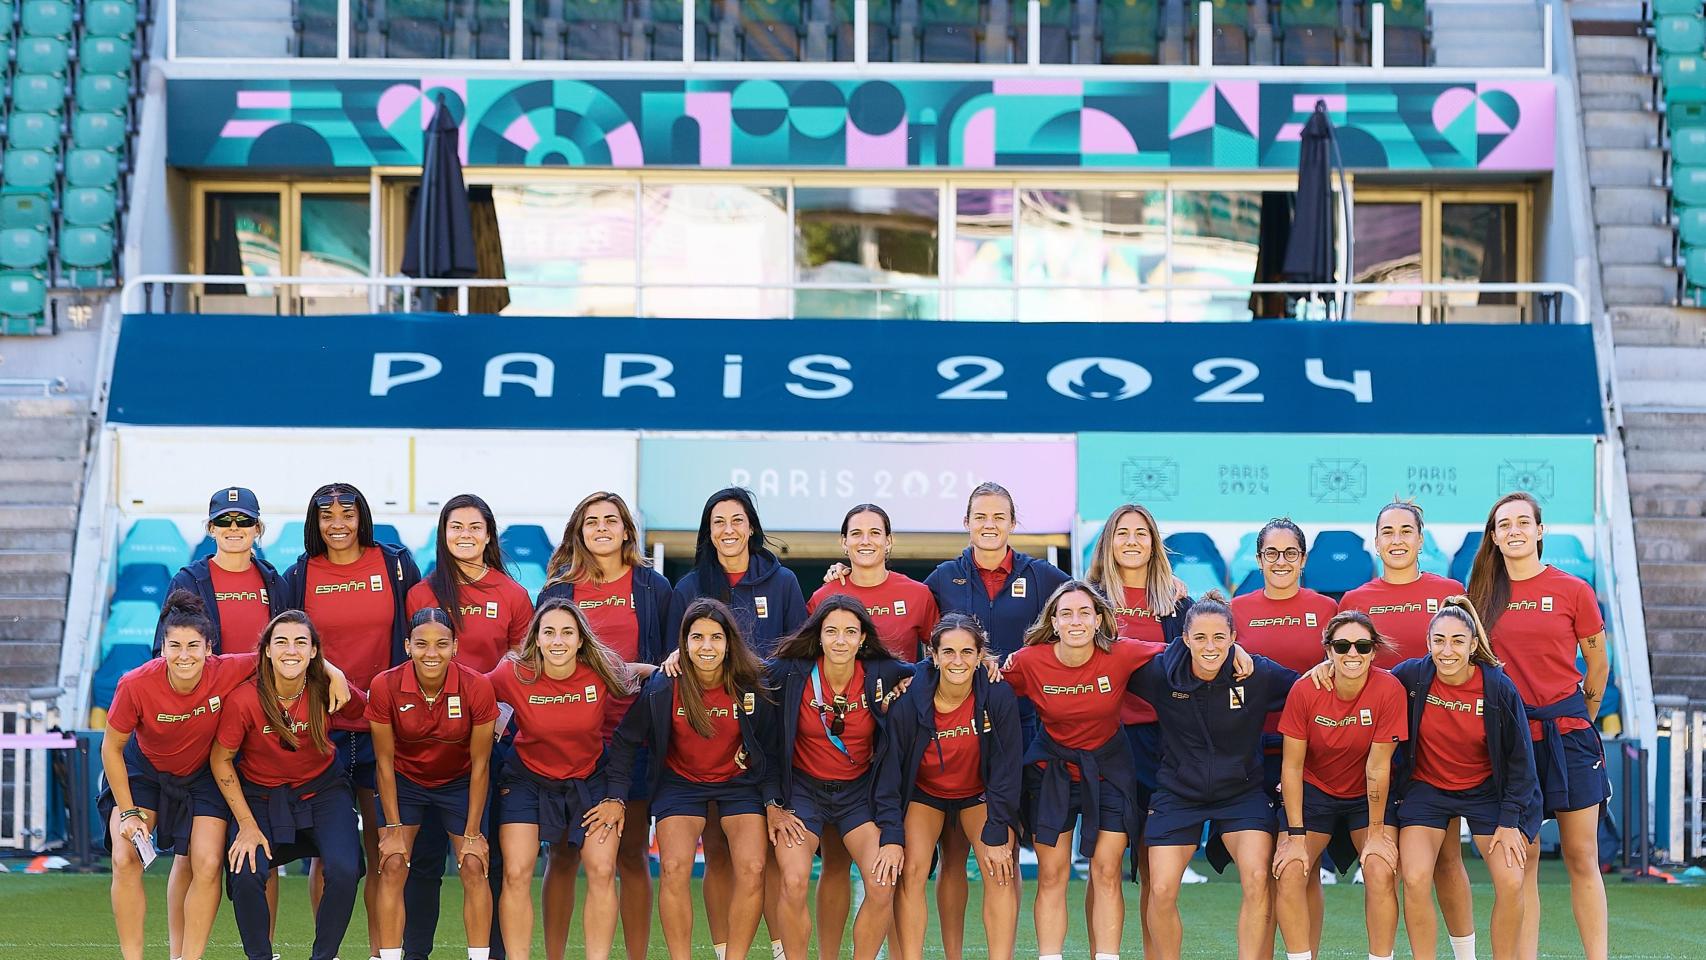 La selección olímpica femenina, al completo, preparada para París 2024